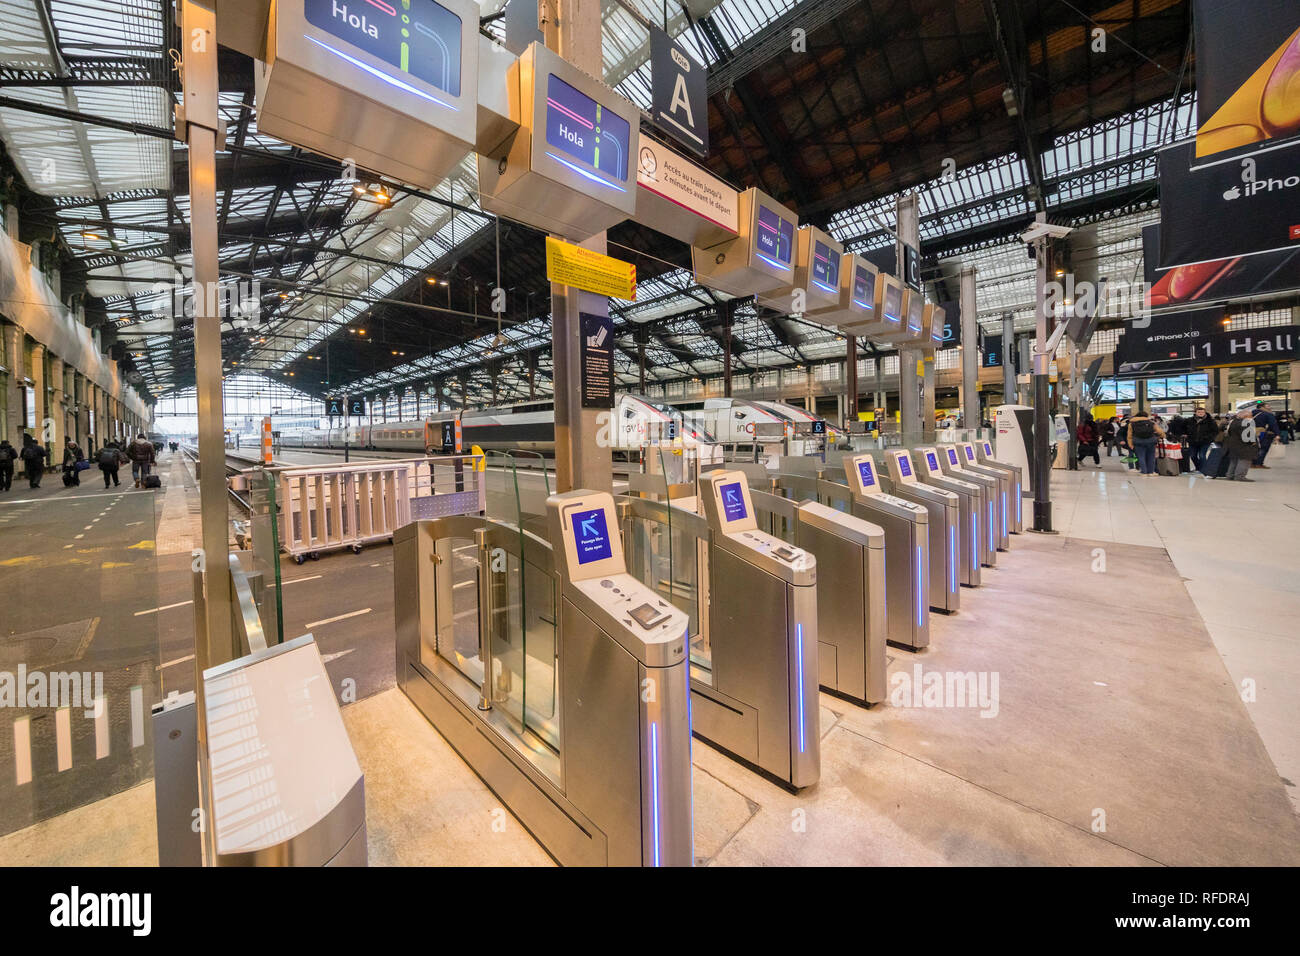 Francia, Parigi Gare de Lyon, Gennaio 2019: cancelli di sicurezza prima della zona di imbarco. Foto Stock